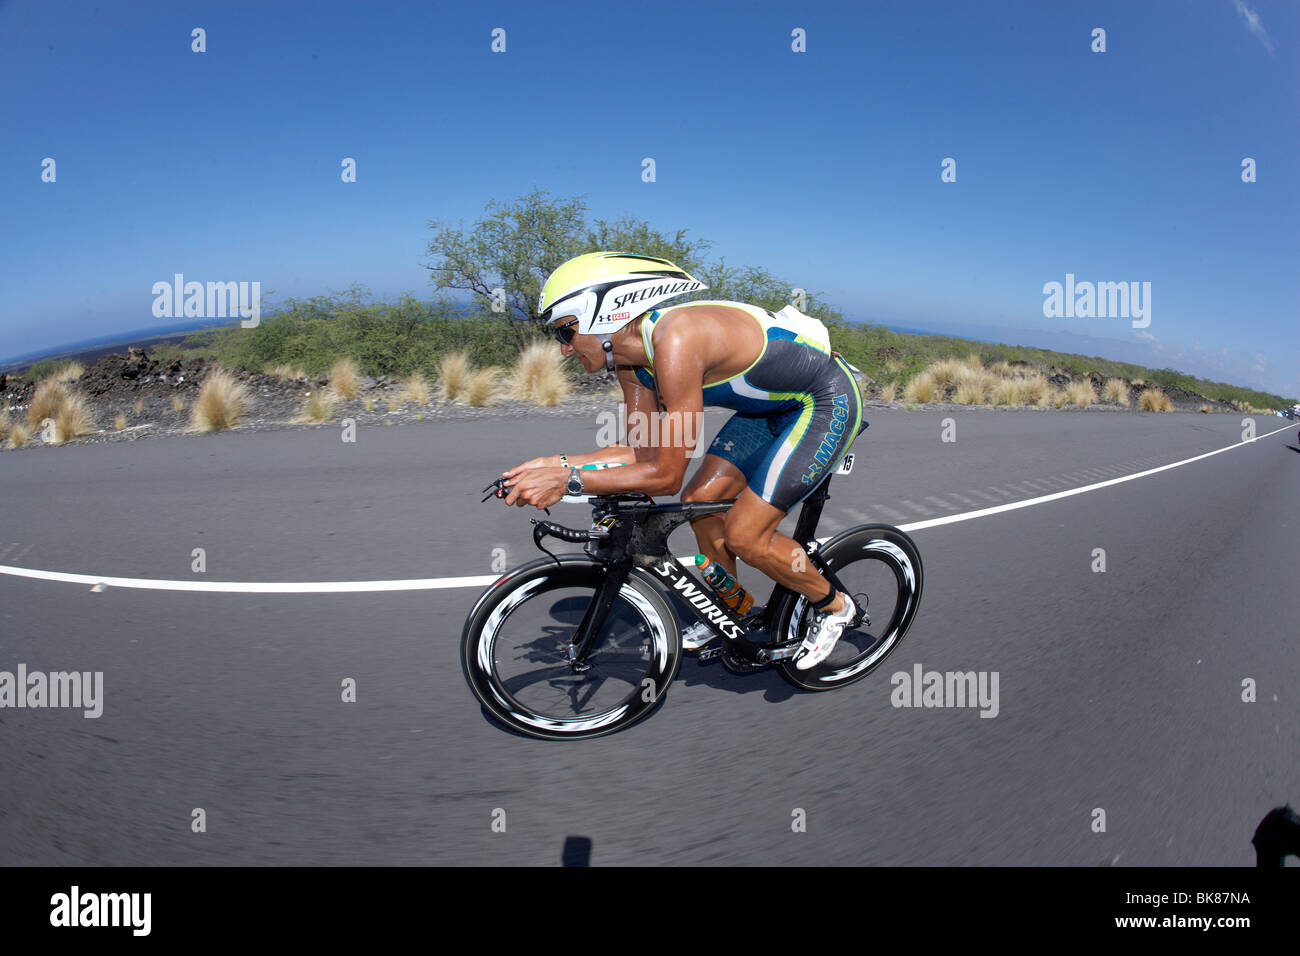 El triatleta profesional australiano Chris McCormack en la bicicleta curso del campeonato del mundo de triatlón Ironman Kailua-Kon Foto de stock